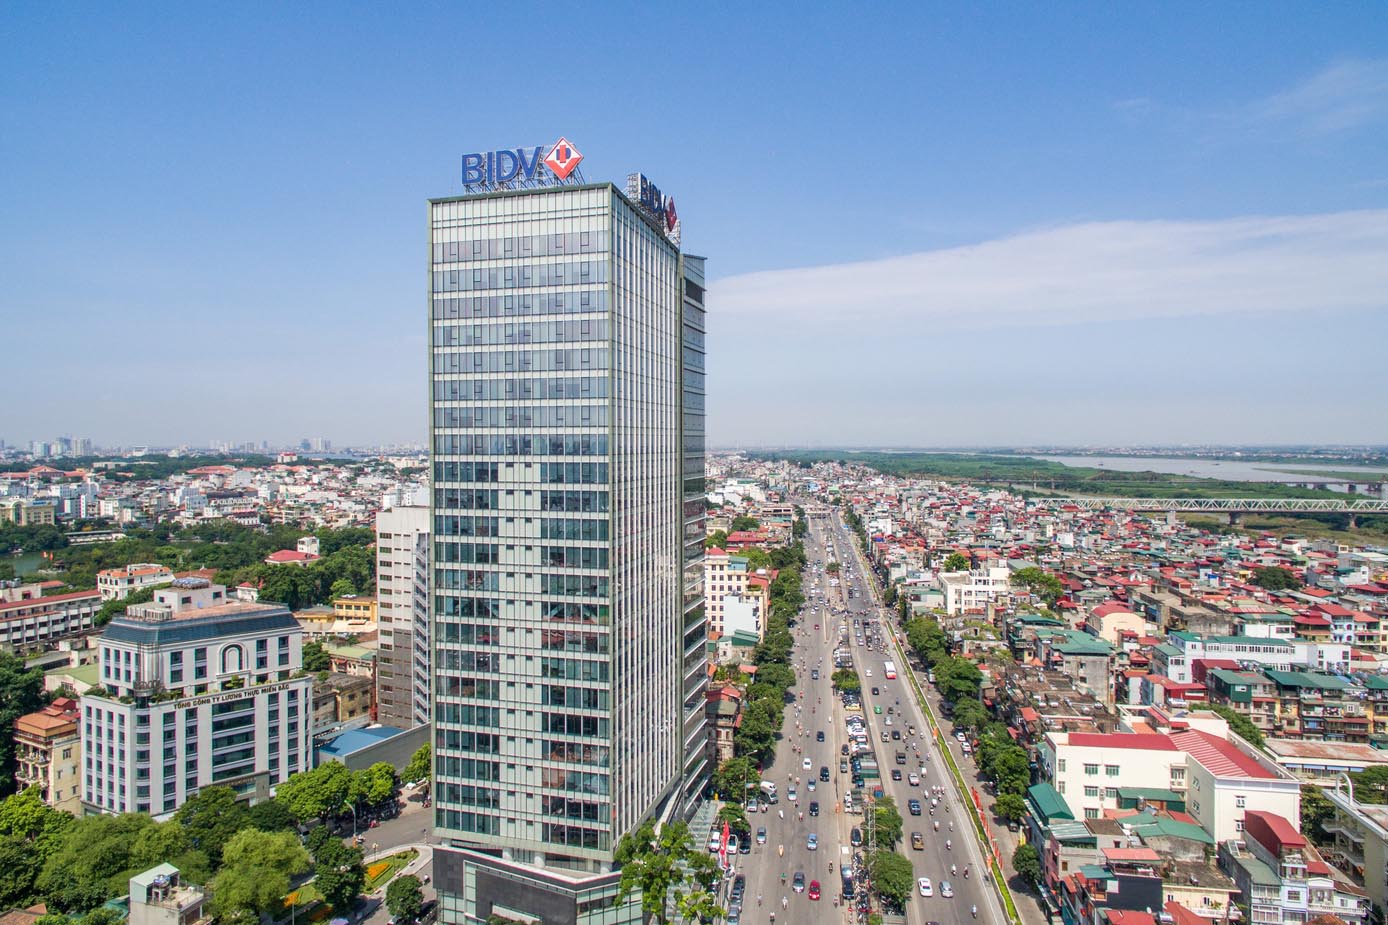  Đây là lần đầu tiên một ngân hàng Việt Nam được nhận giải thưởng này từ The Asian Banker.